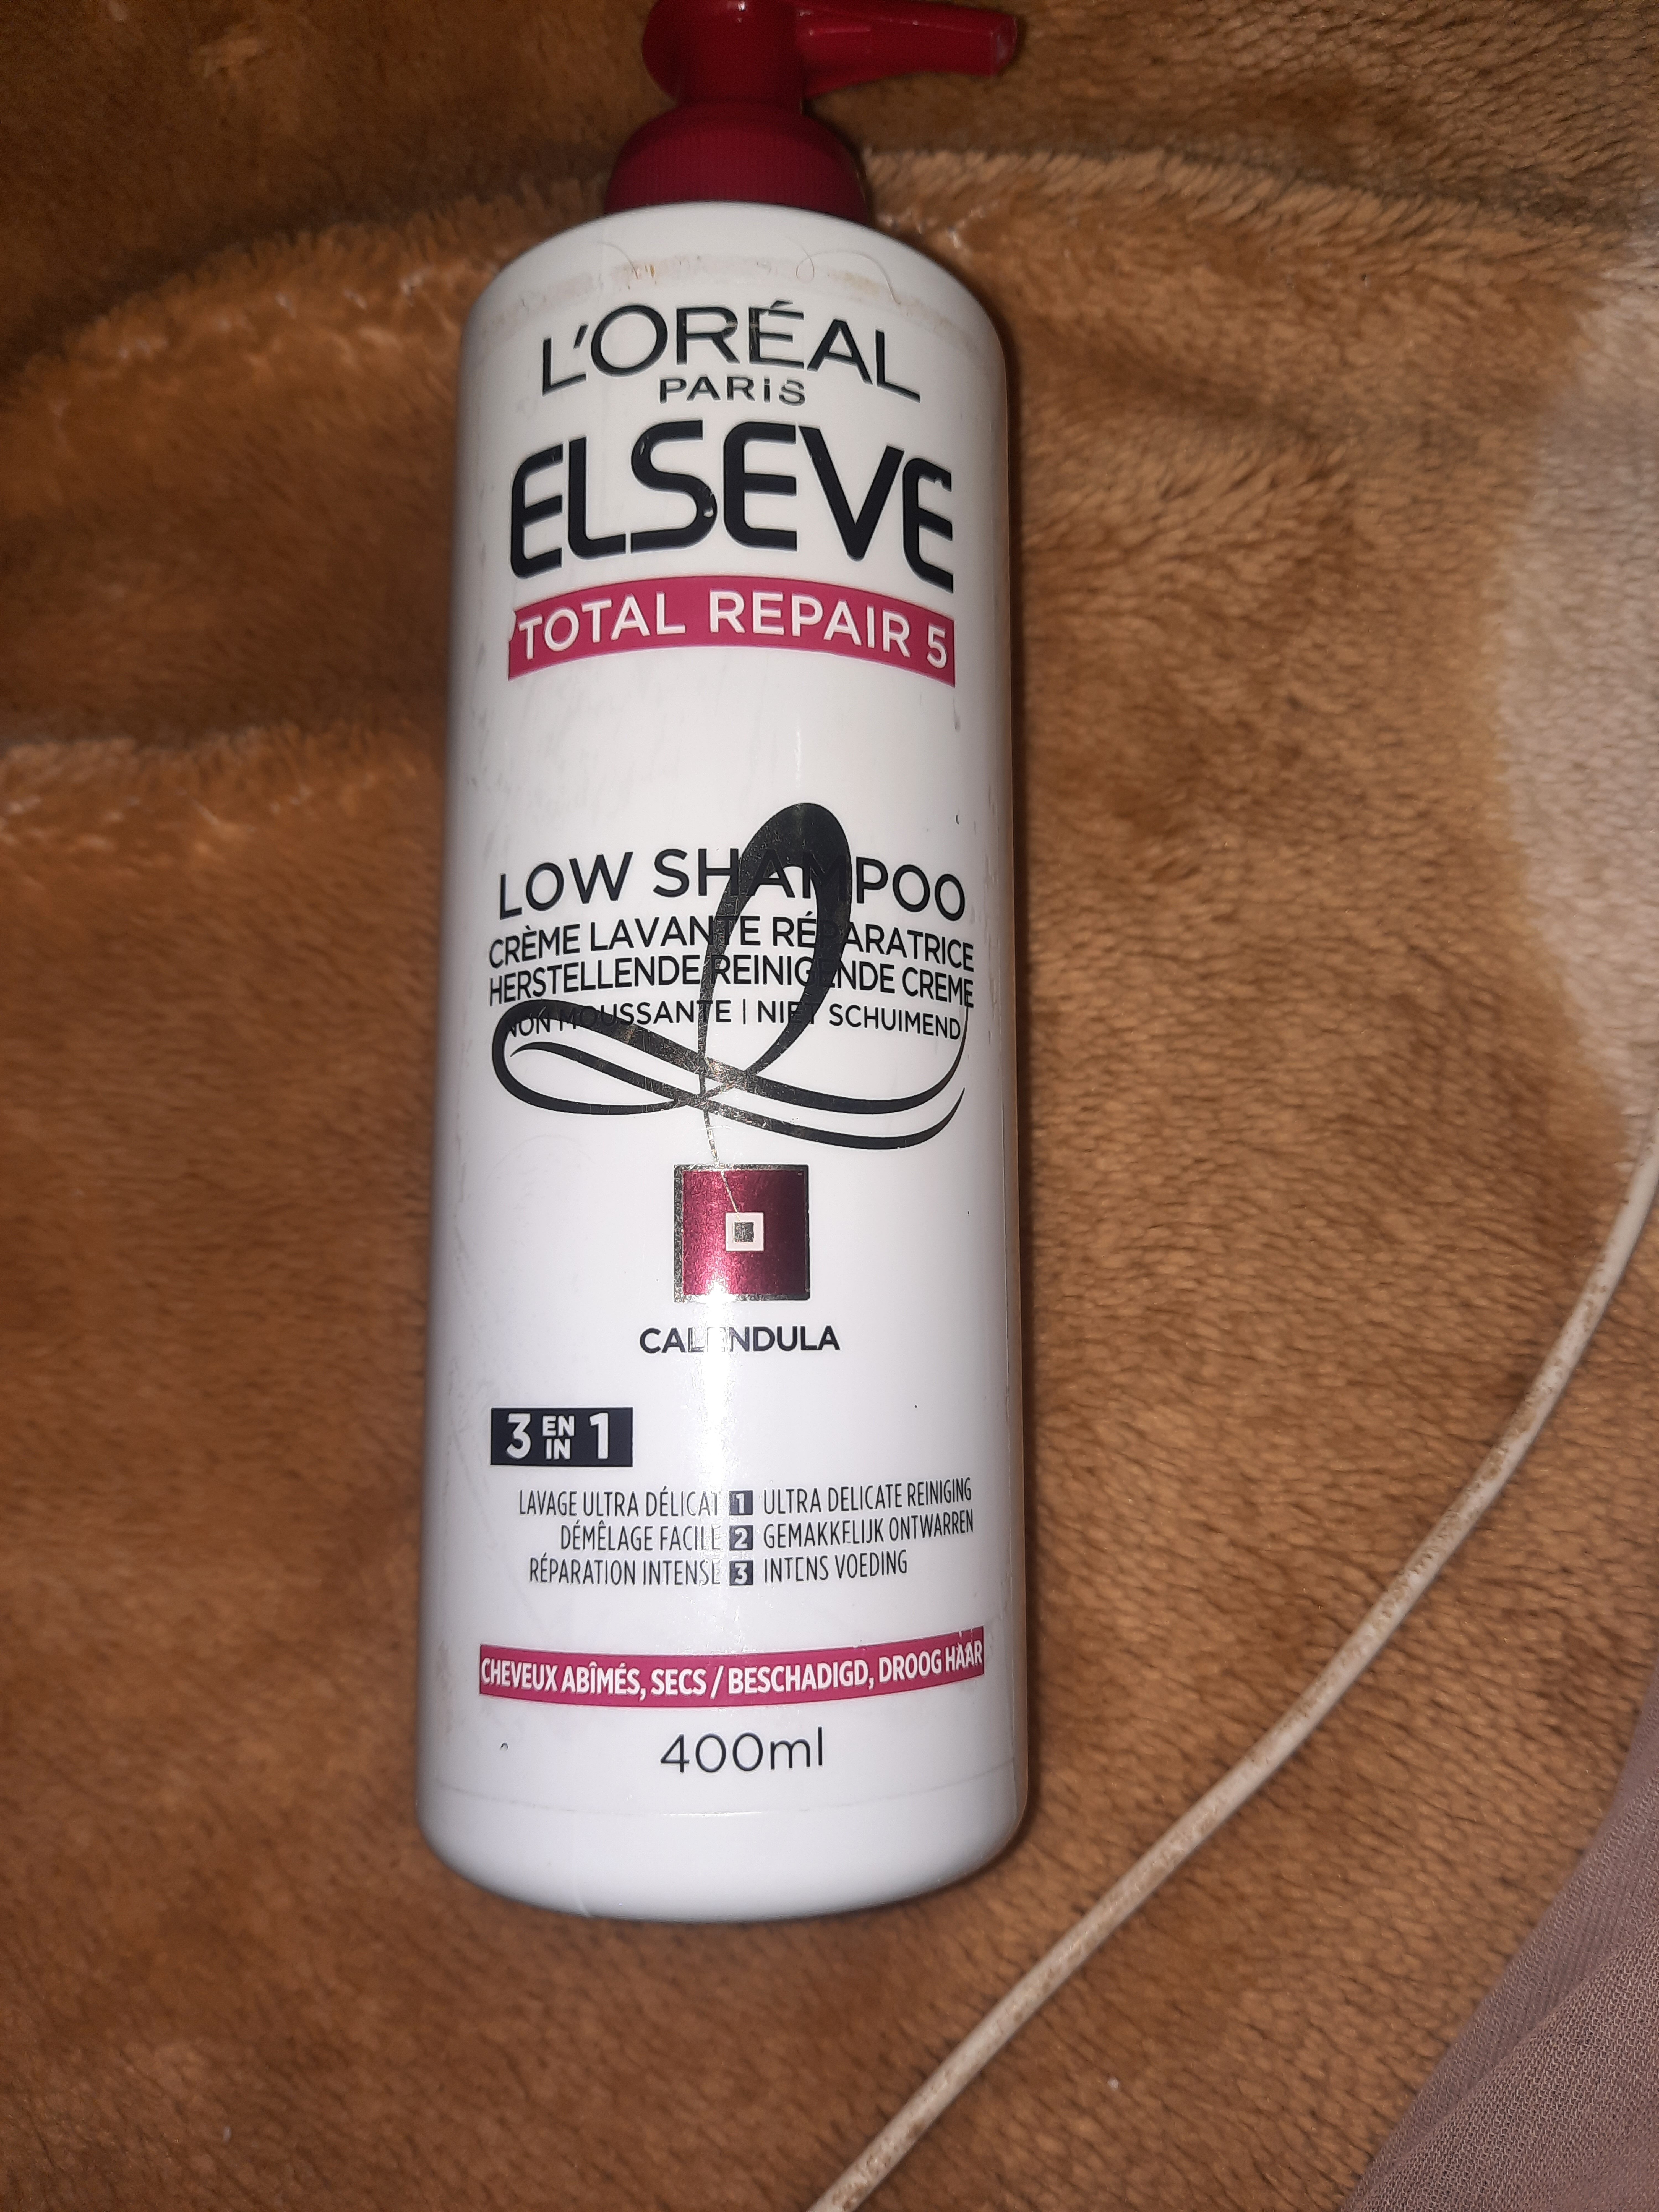 total repair 5 low shampoo - Produit - en